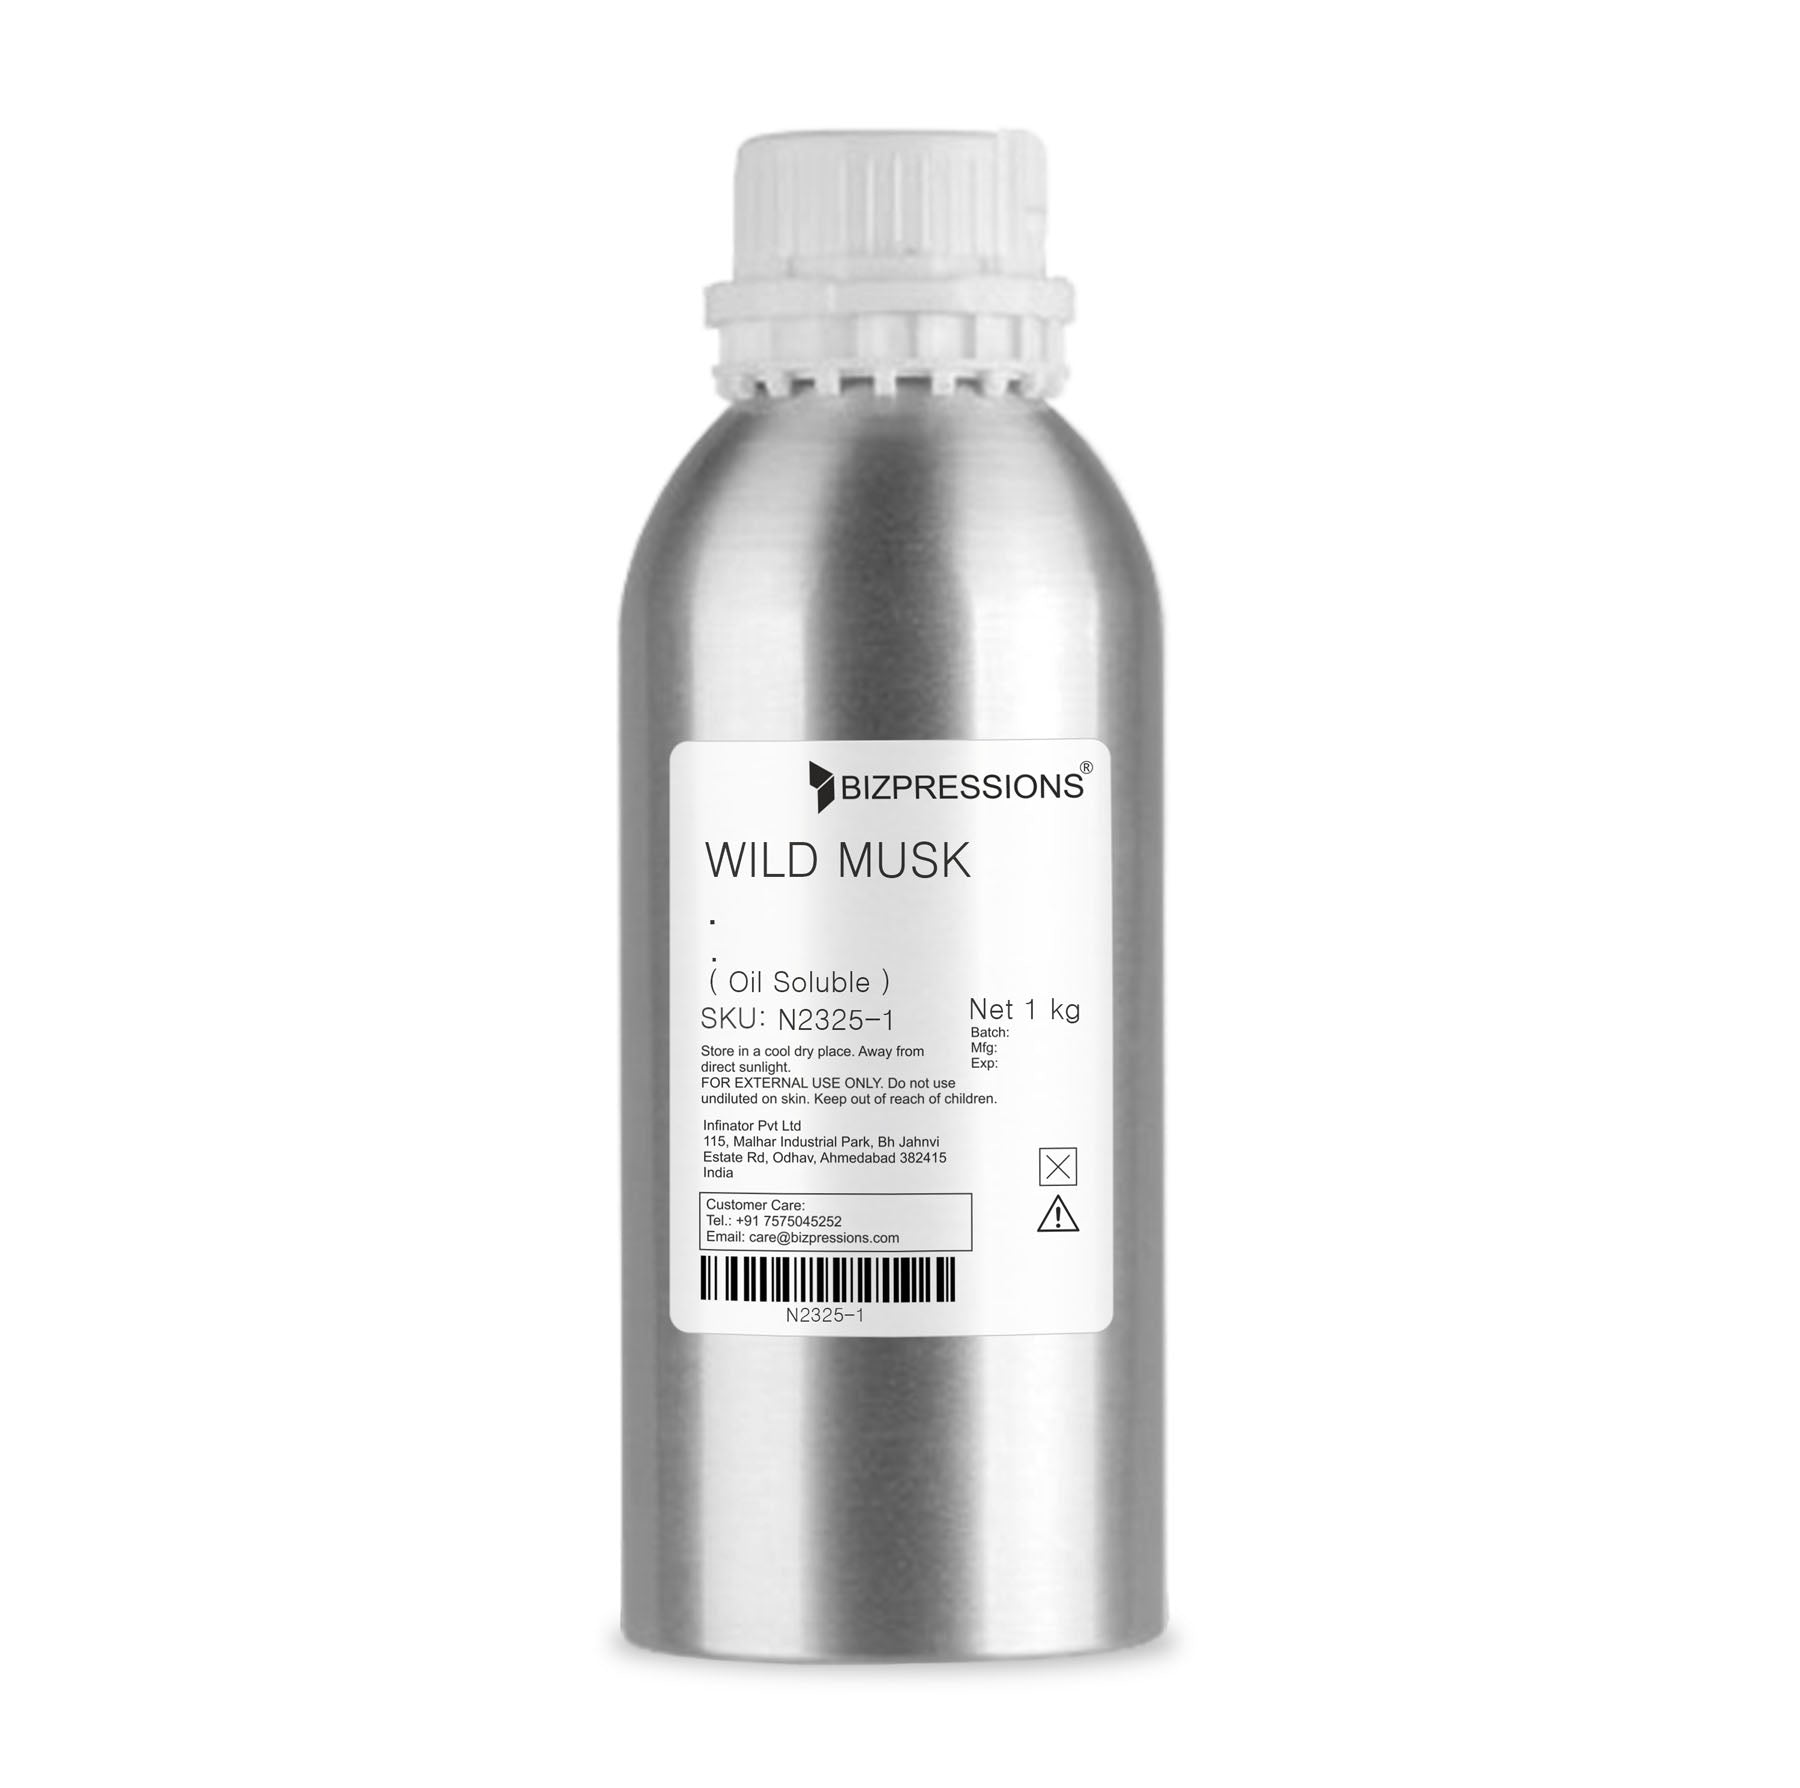 WILD MUSK - Fragrance ( Oil Soluble ) - 1 kg